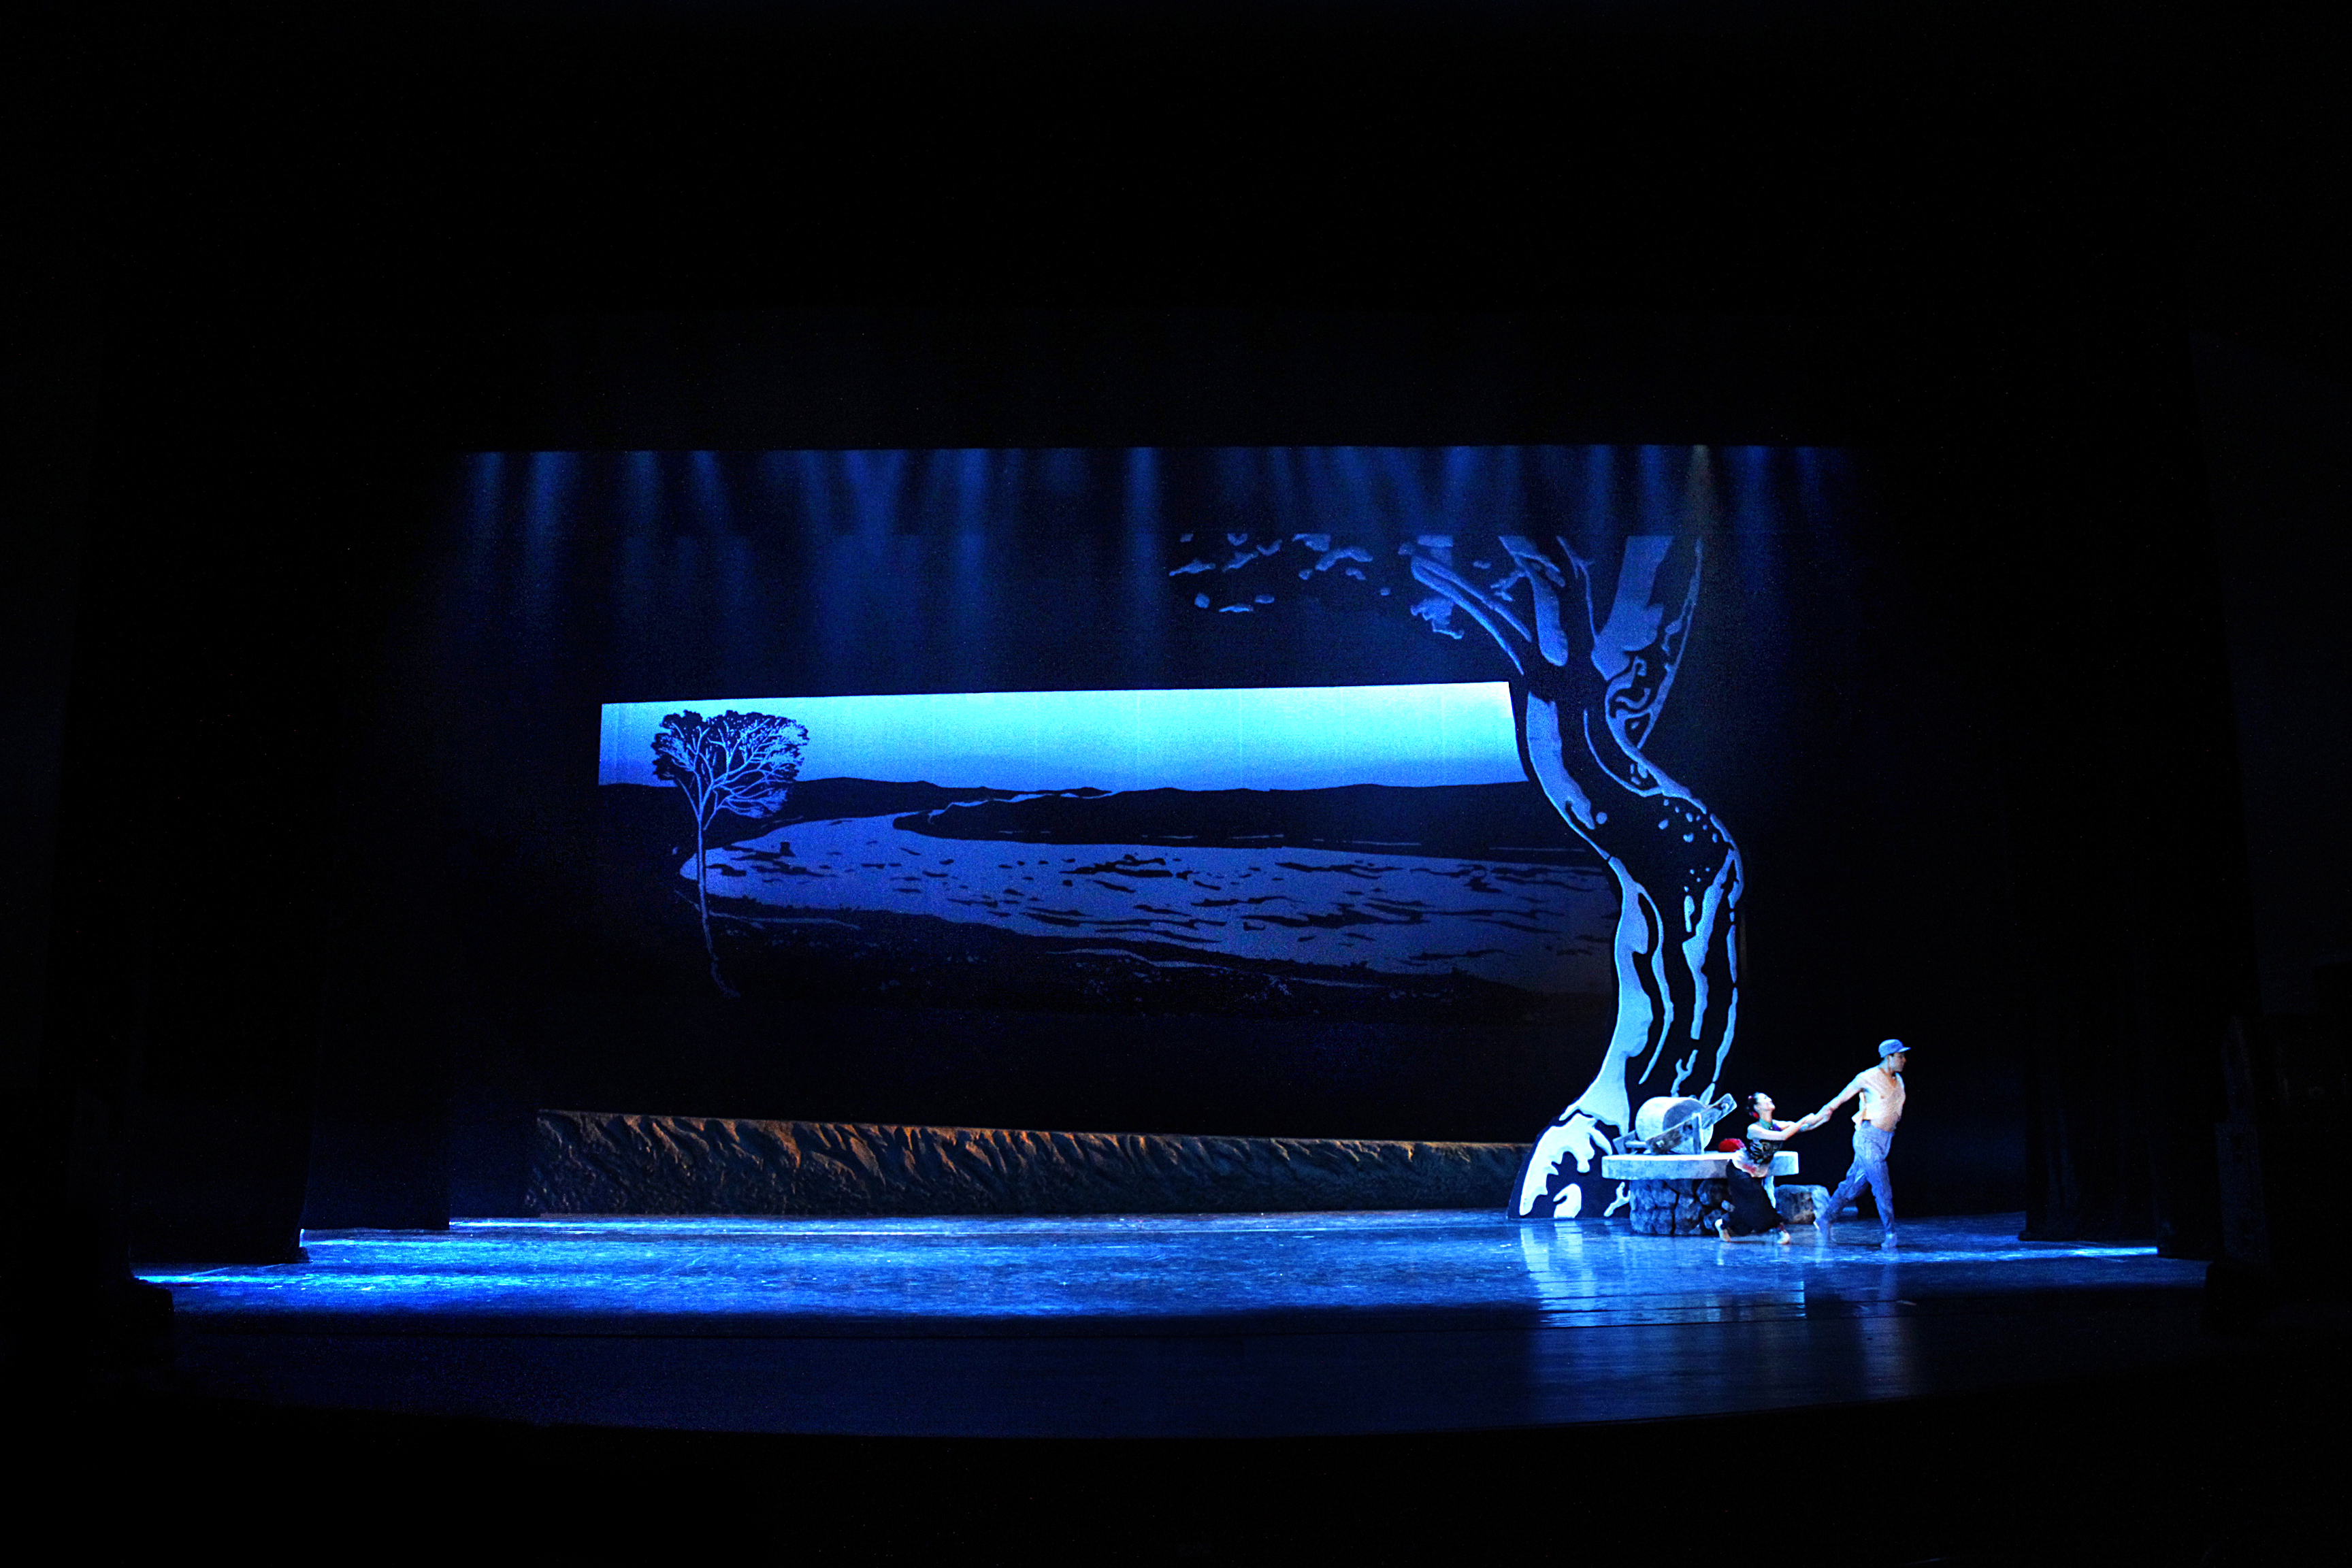 2012年舞剧《延安记忆》——舞美执行设计 制作